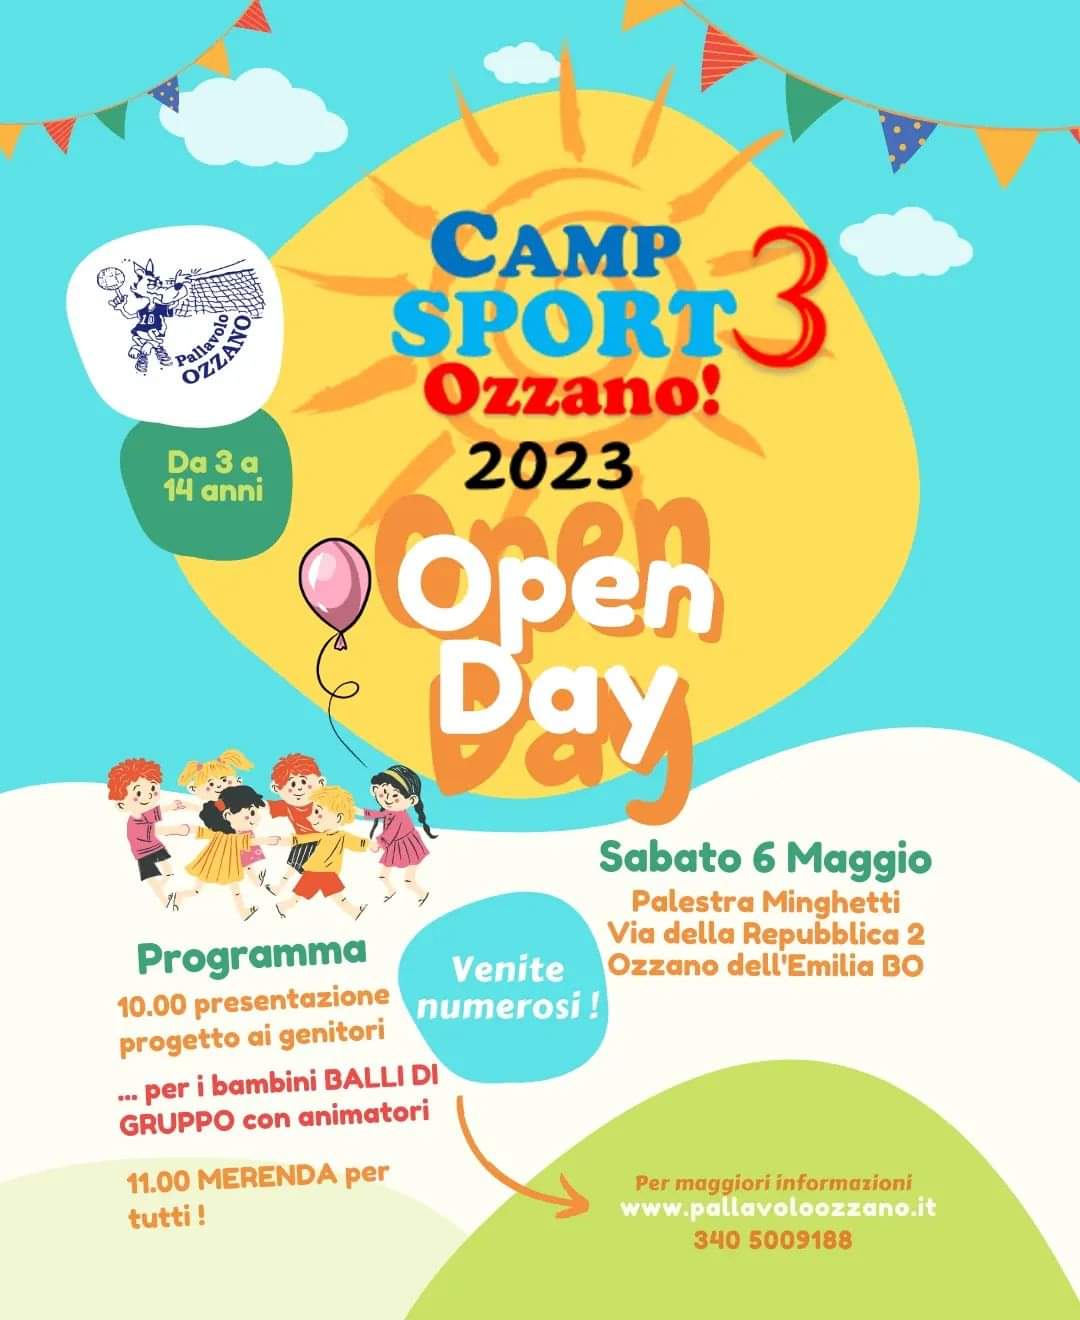 Al momento stai visualizzando Camp Sport Ozzano 3! Estate 2023